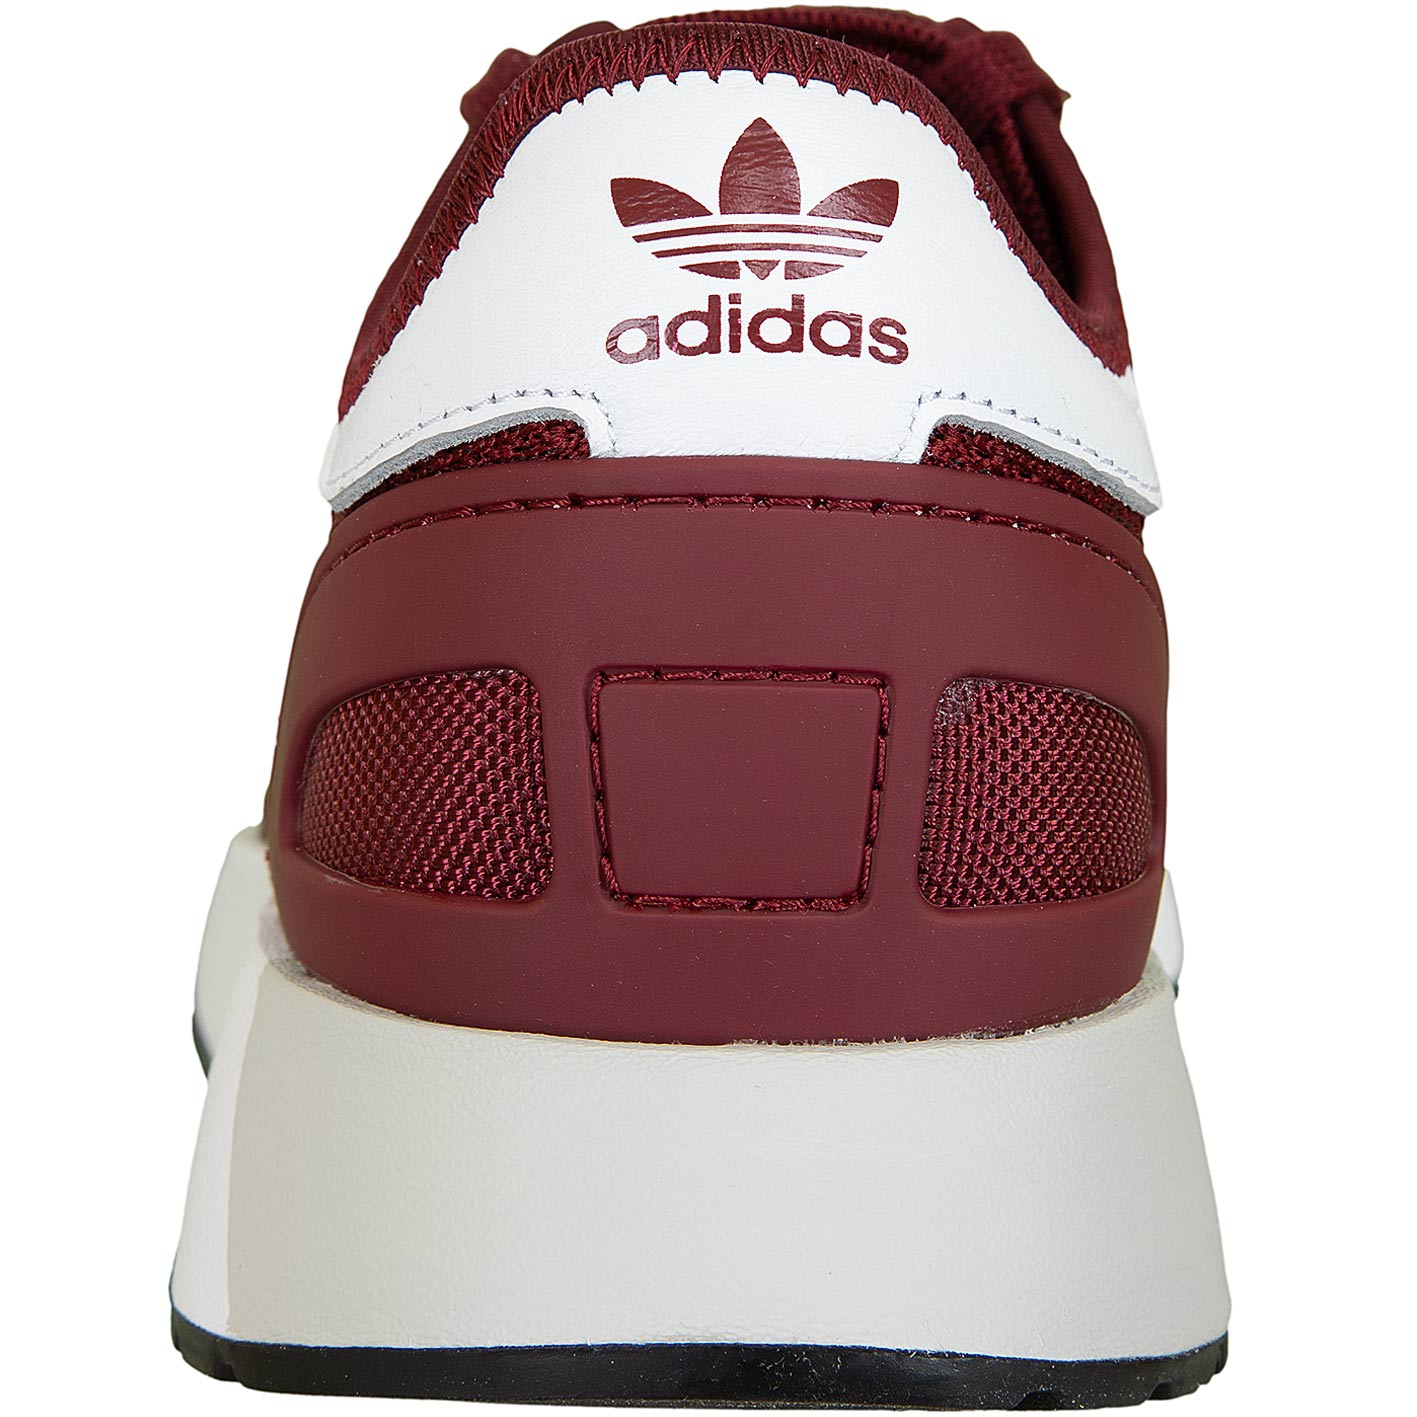 ☆ Adidas Originals Sneaker N-5923 weinrot/weiß - hier bestellen!